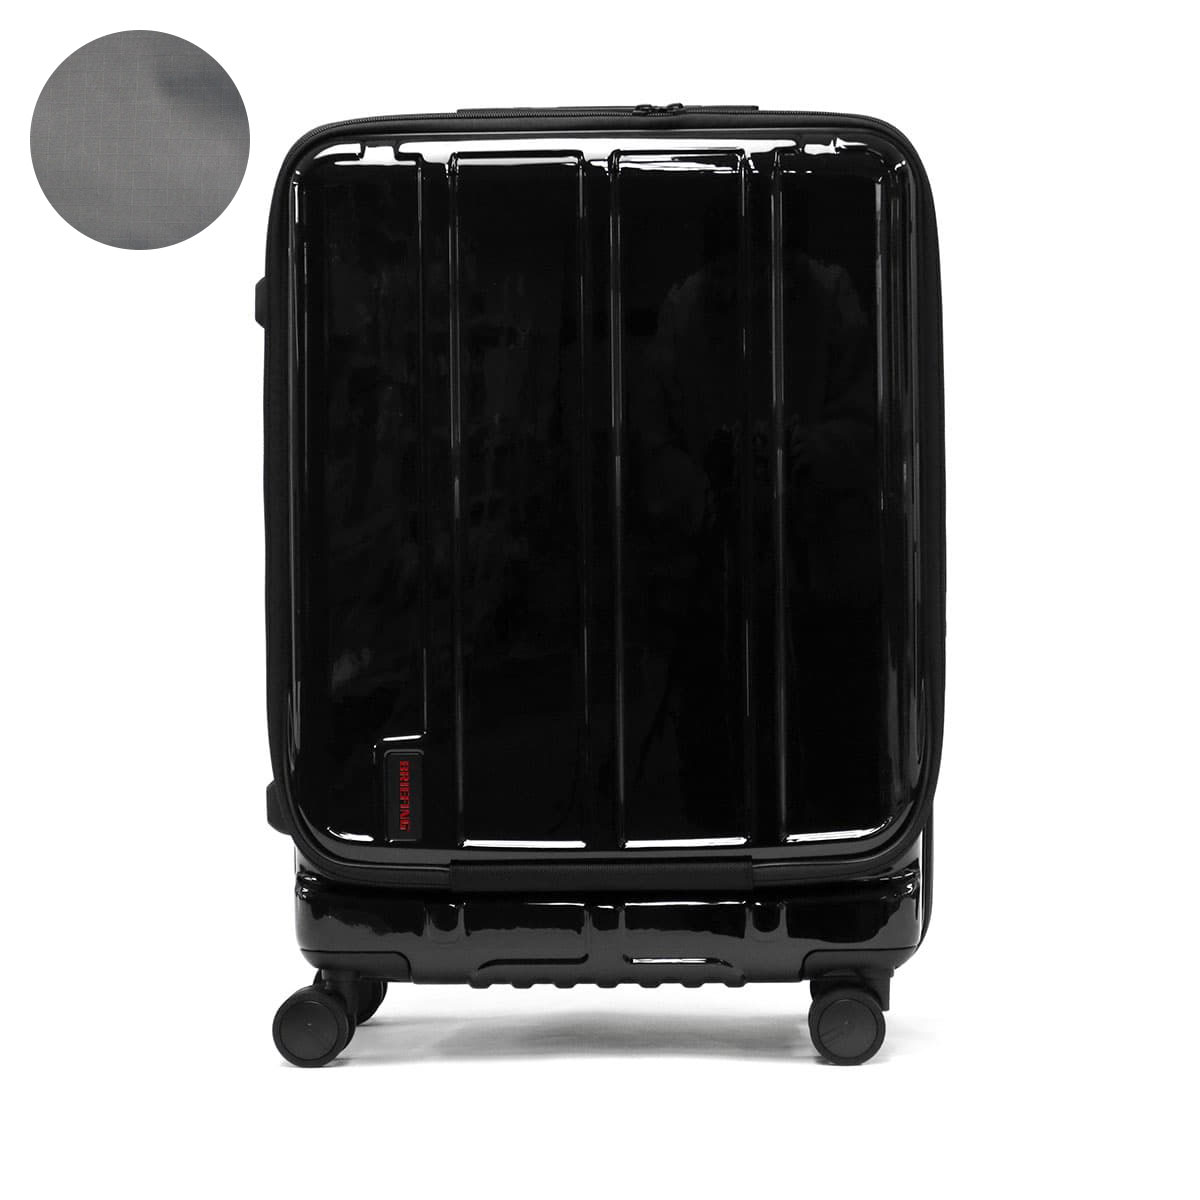 日本正規品 ブリーフィング スーツケース BRIEFING M Mサイズ 60L 軽量 